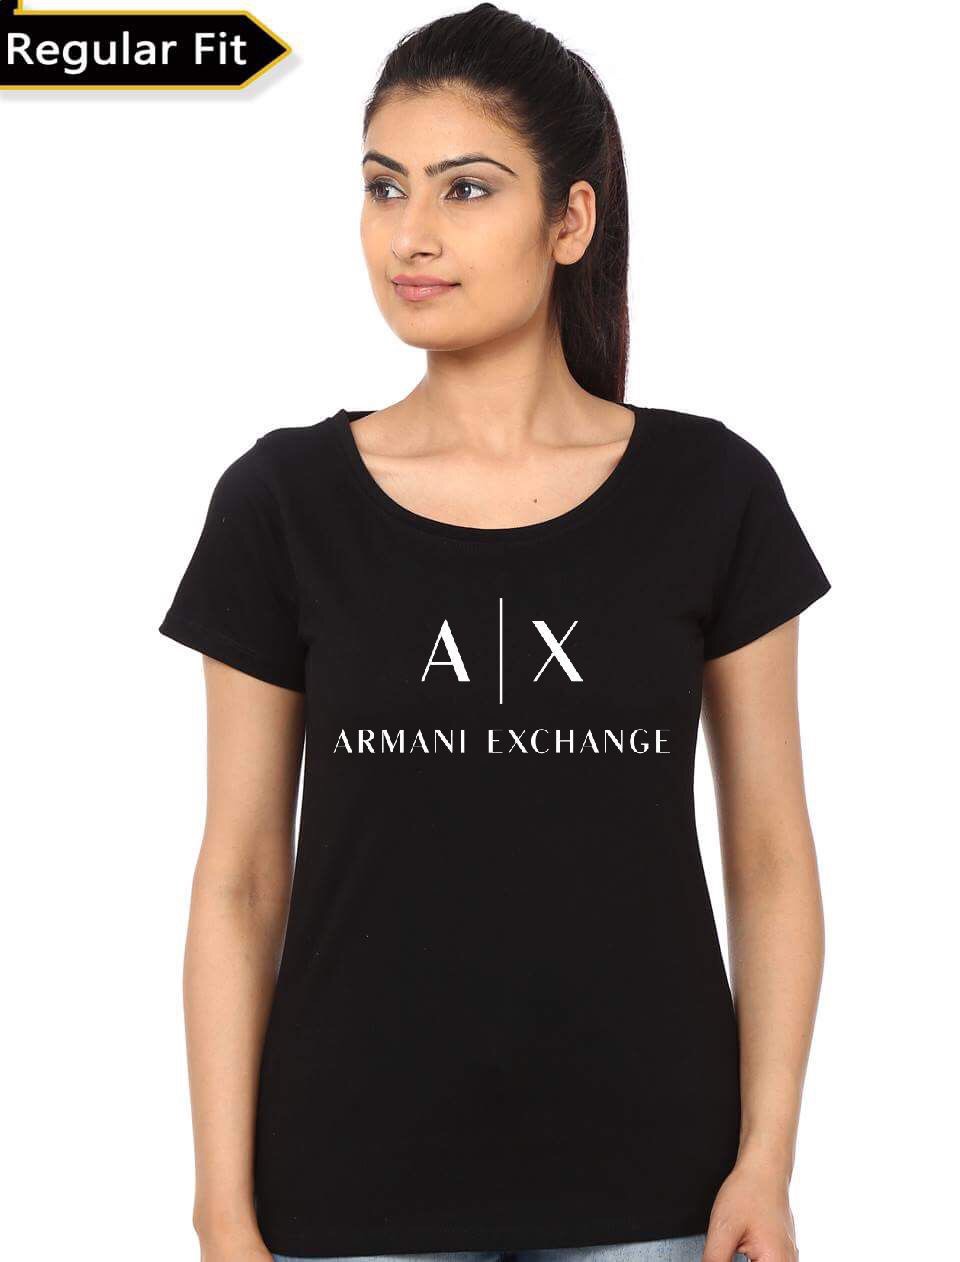 armani exchange shirts online india